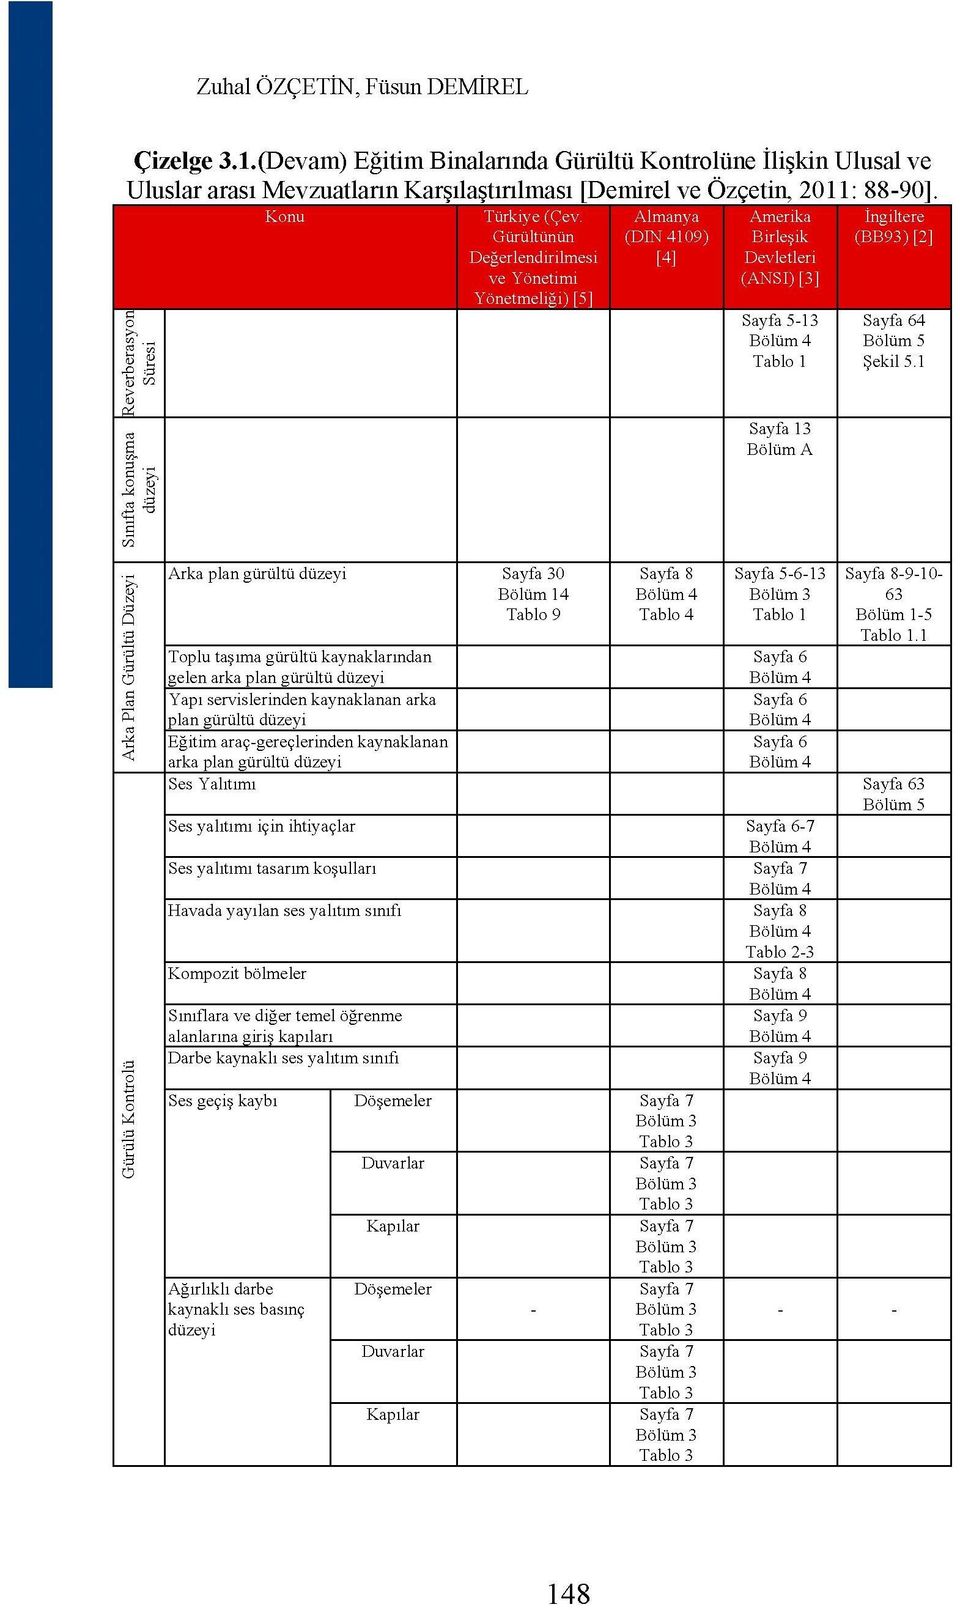 Almanya Amerika İngiltere Gürültünün Değerlendirilmesi ve Yönetimi Yönetmeliği) [5] (DIN 4109) [4] Birleşik Devletleri (ANSI) [3] (BB93) [2] Arka plan gürültü düzeyi Sayfa 30 Bölüm 14 Tablo 9 Toplu